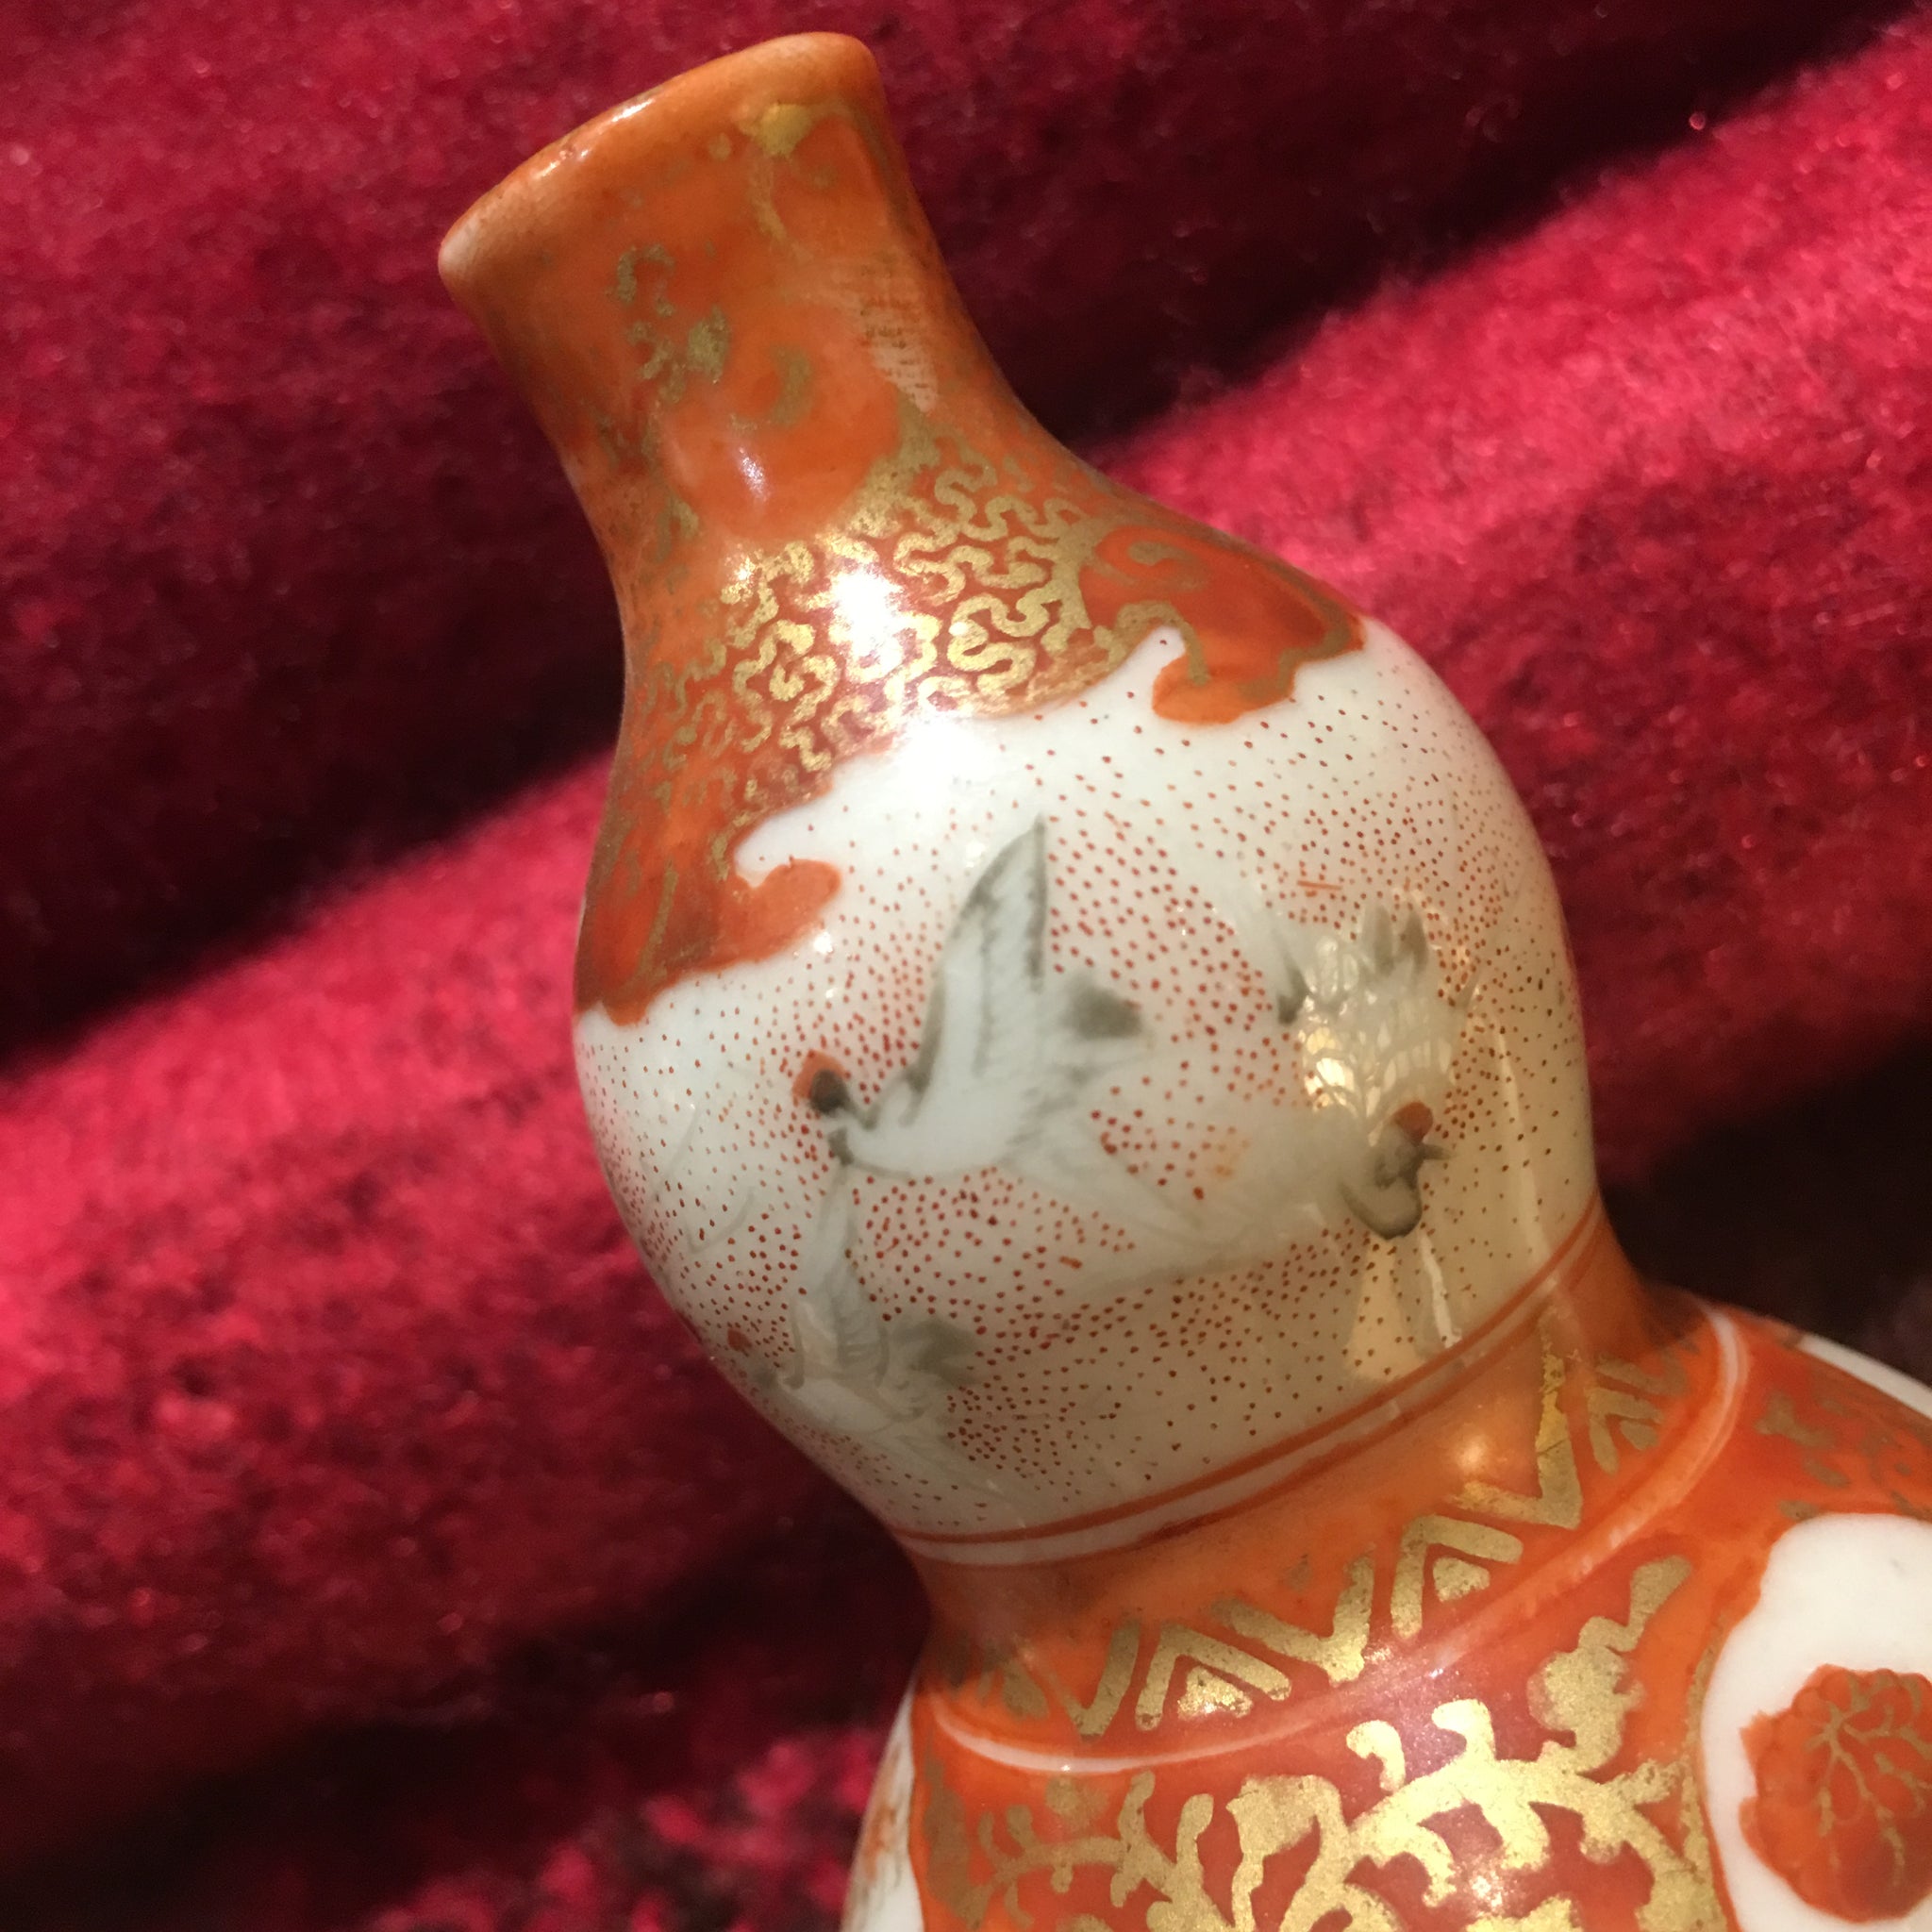 Antique Pair of Miniature Kutani Gourd Vases